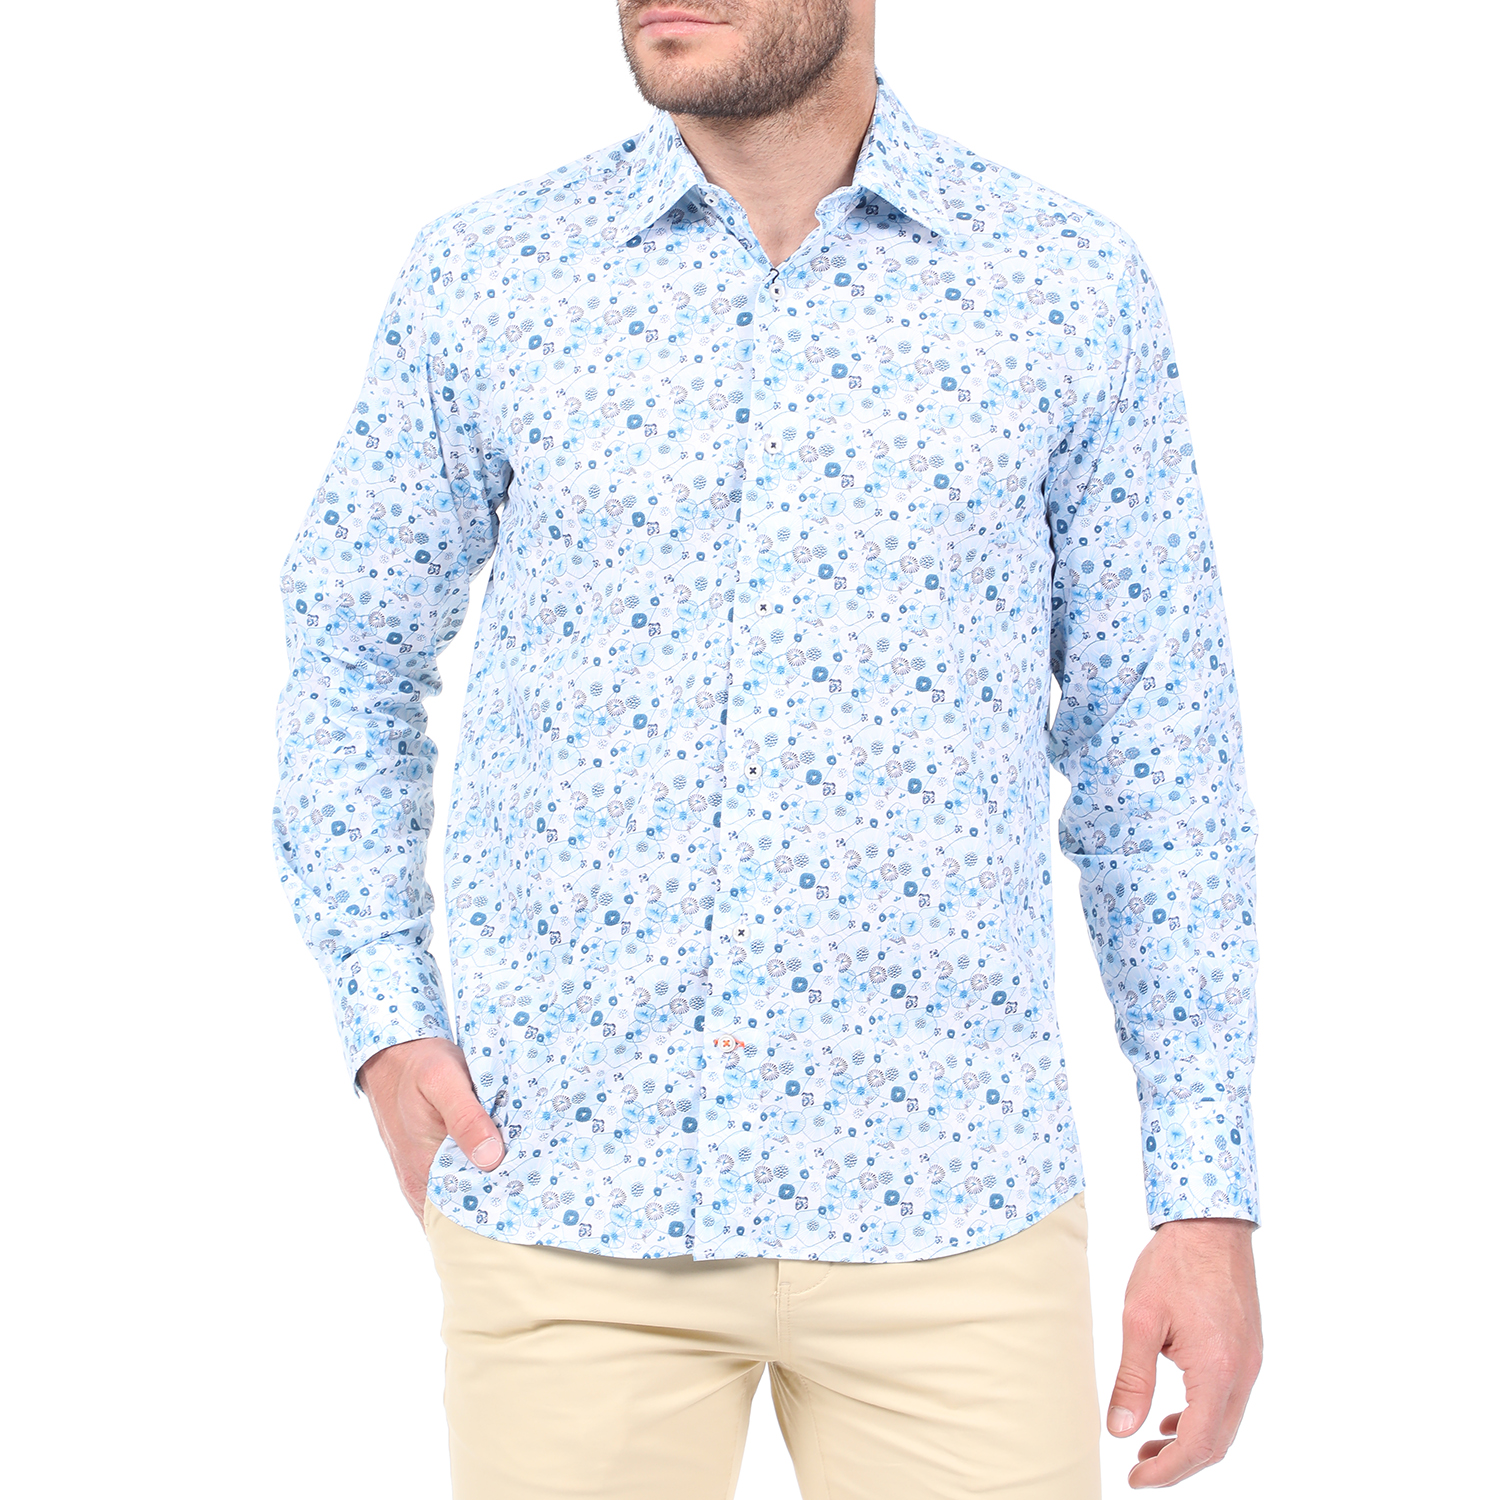 Ανδρικά/Ρούχα/Πουκάμισα/Μακρυμάνικα DORS - Ανδρικό πουκάμισο DORS γαλάζιο